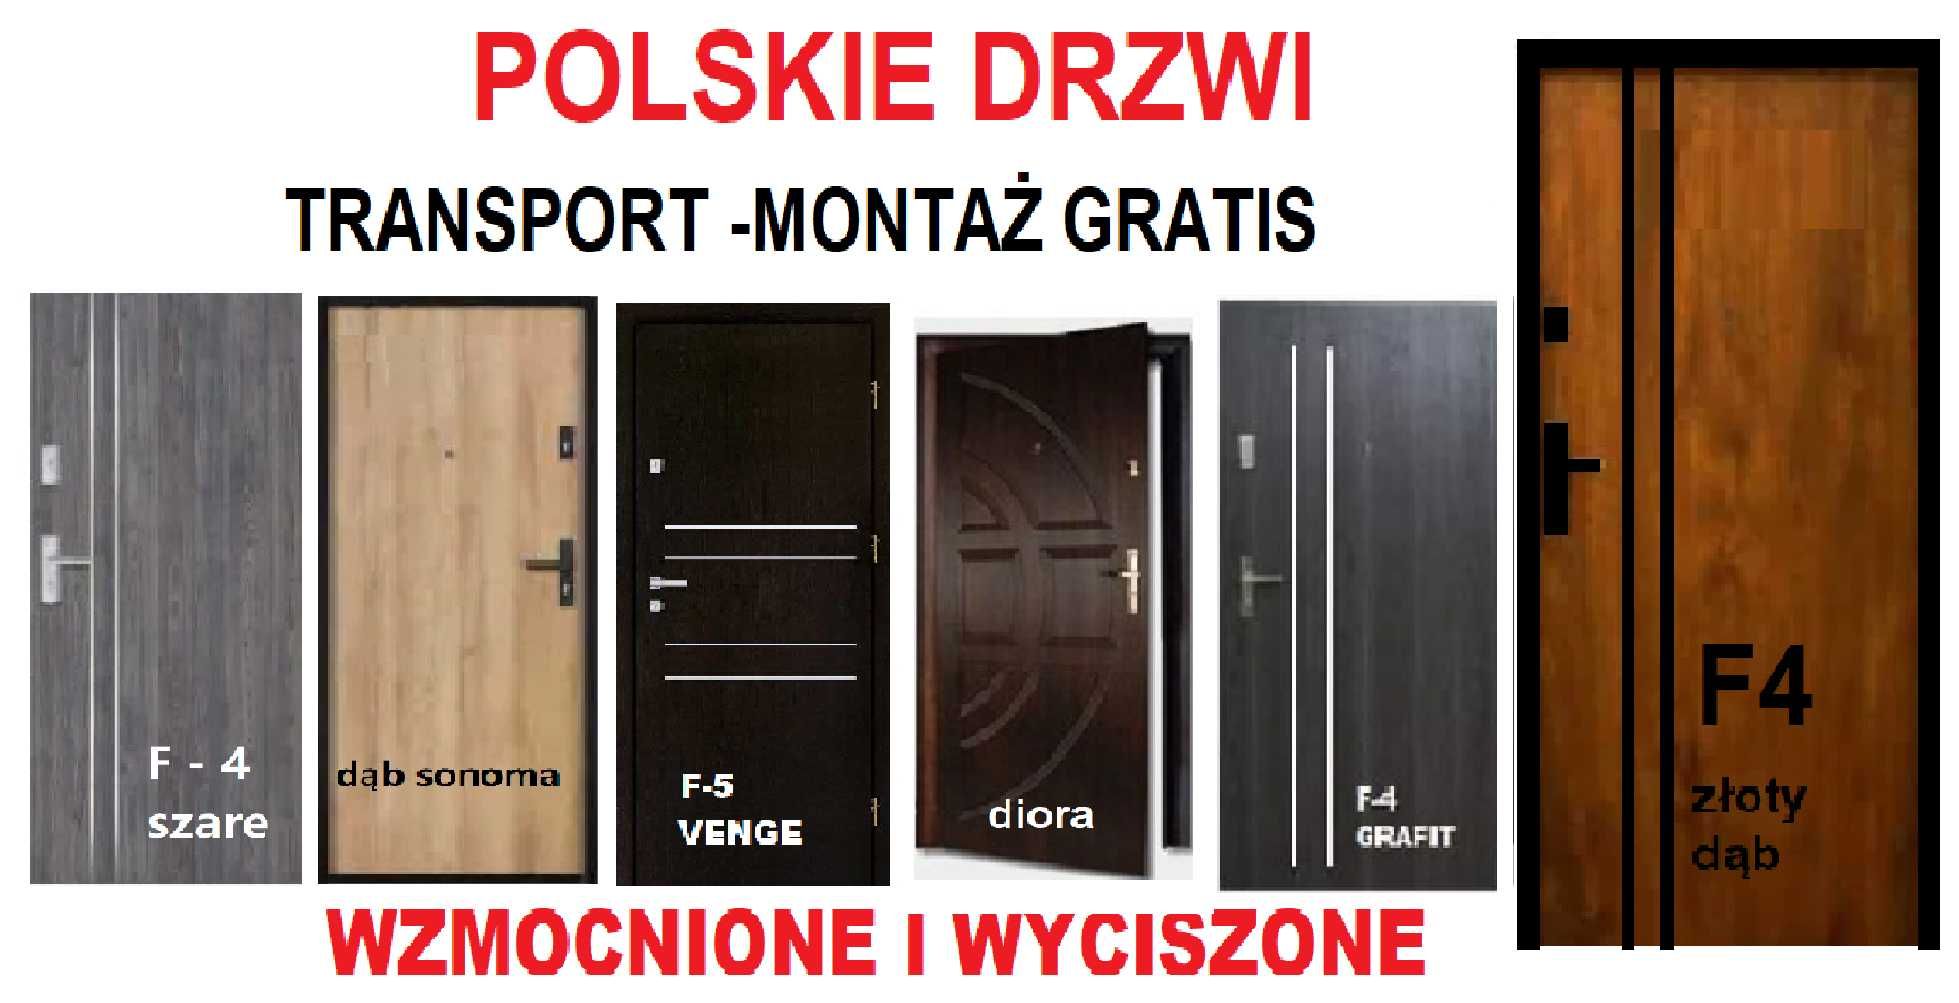 Drzwi ZEWNĘTRZNE -wejściowe do bloku, polskie,antywłamaniowe Z MONTAŻE